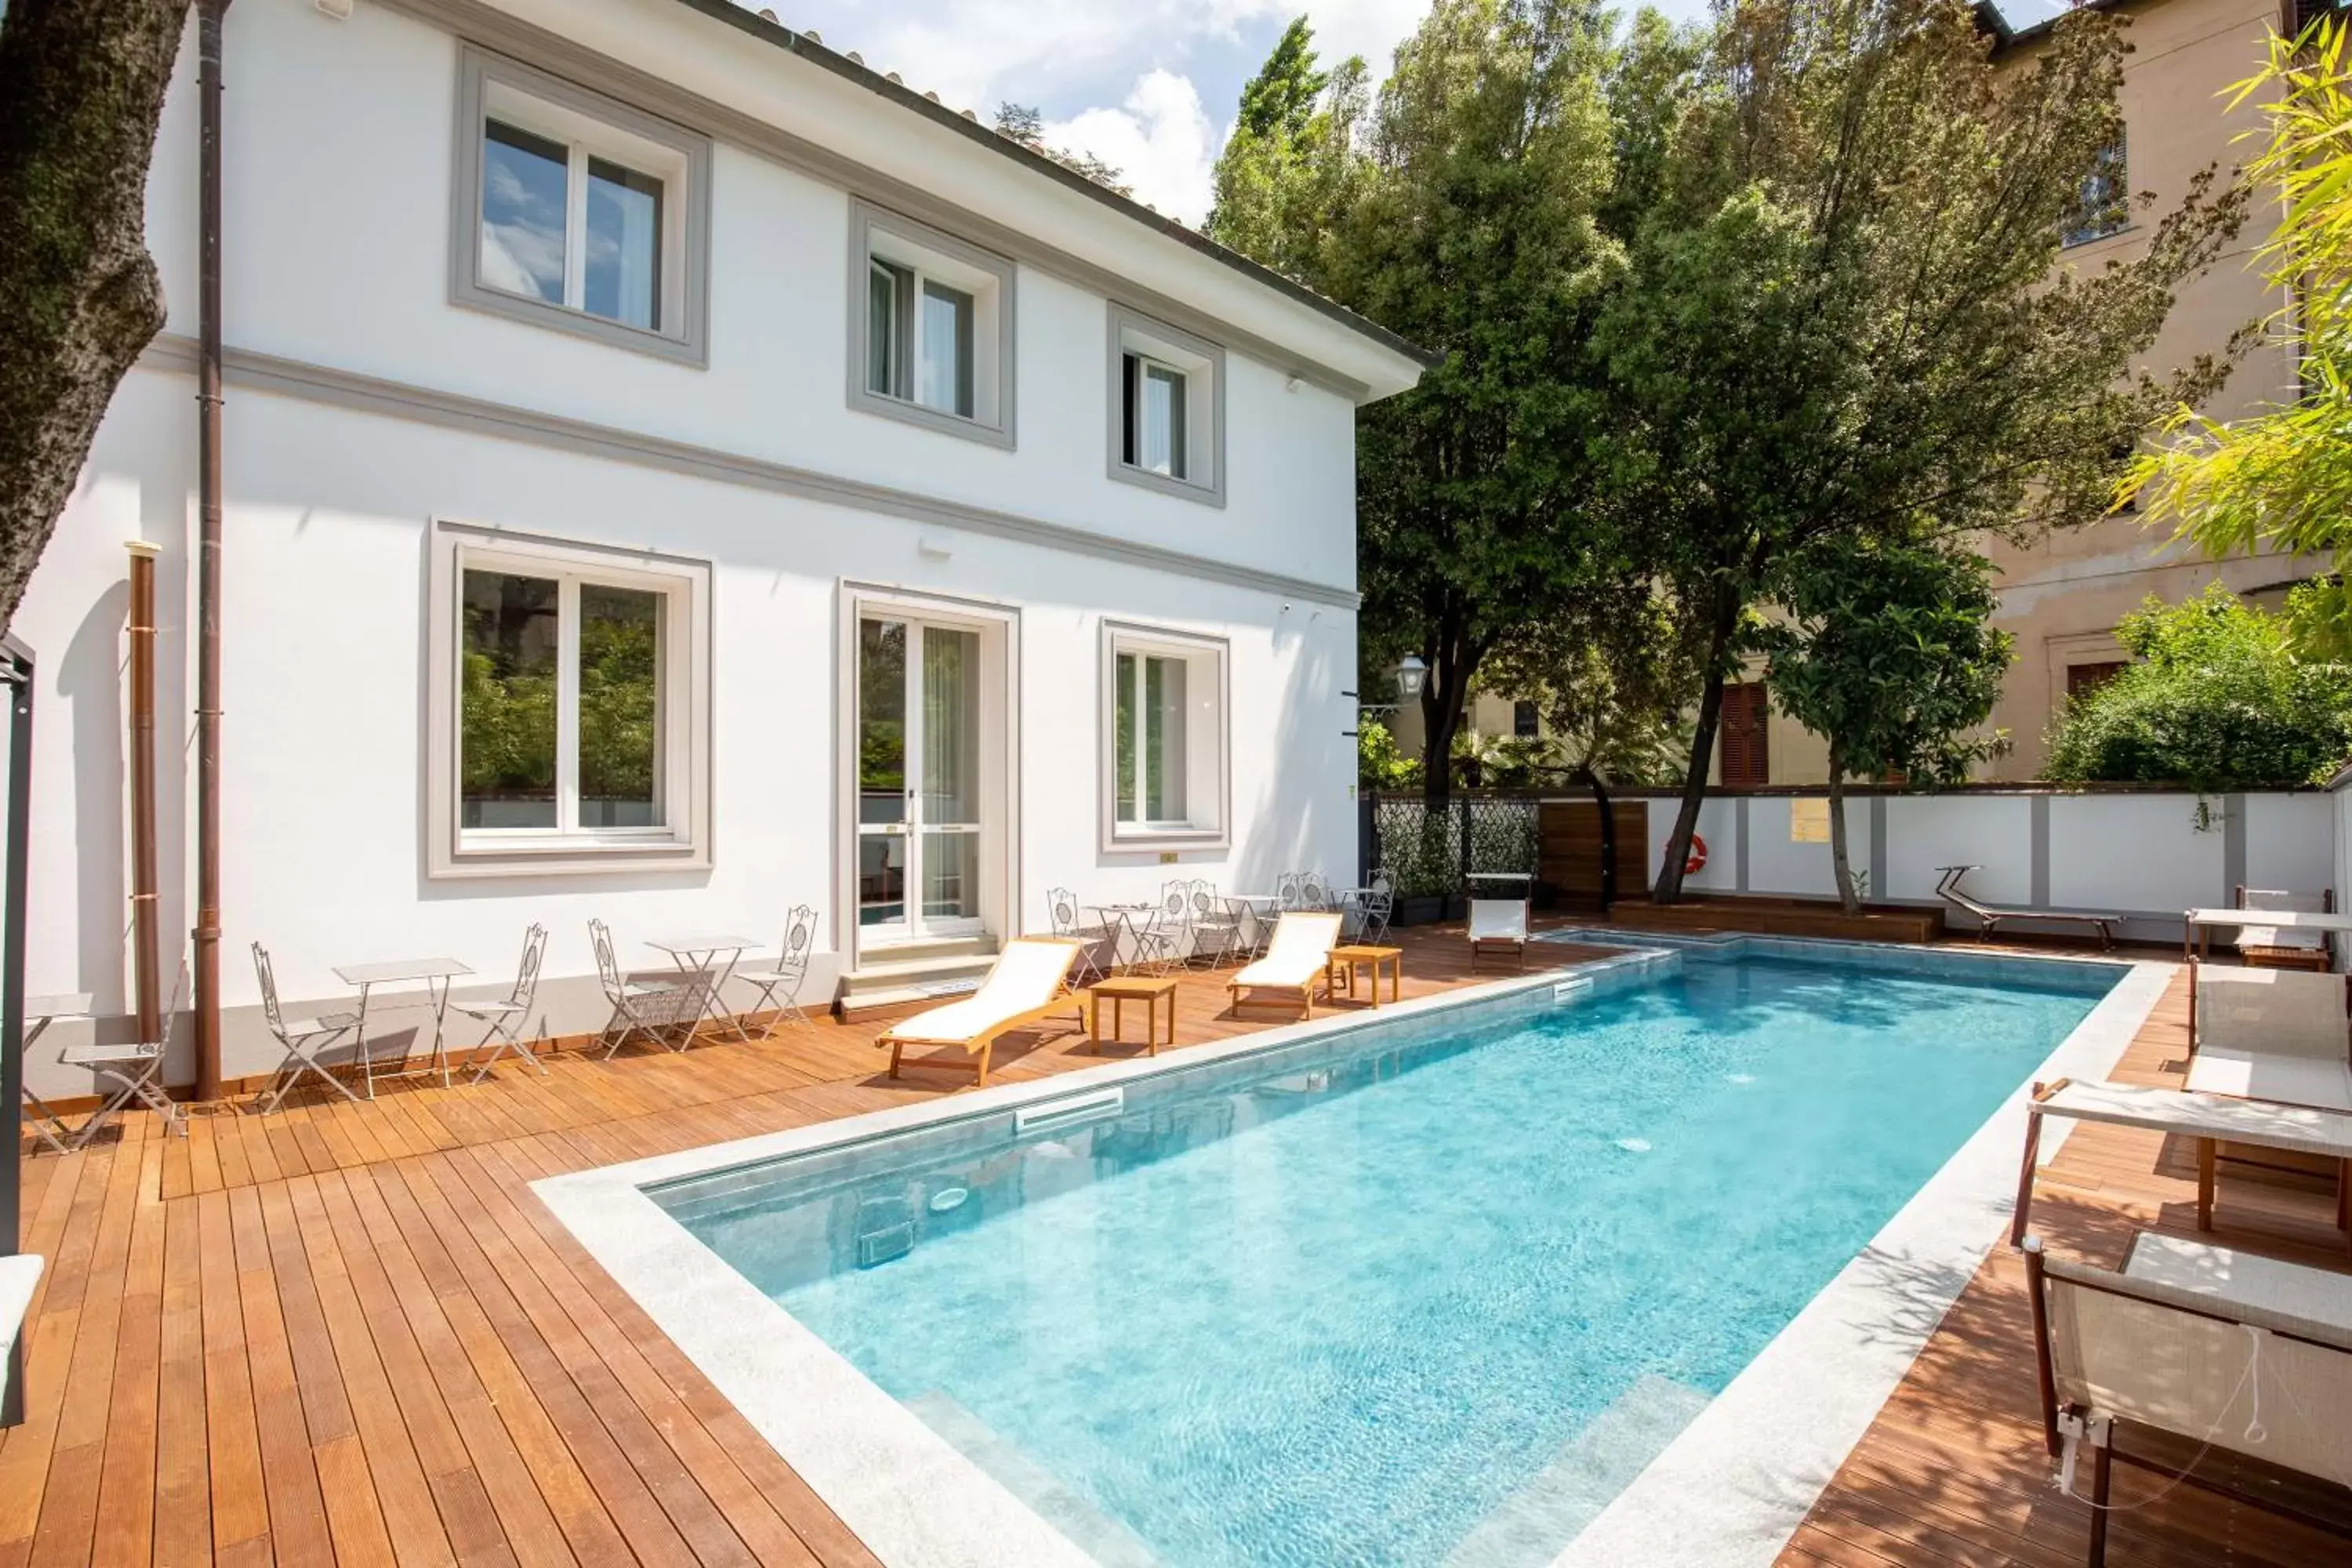 Swimming Pool in Villa Tortorelli